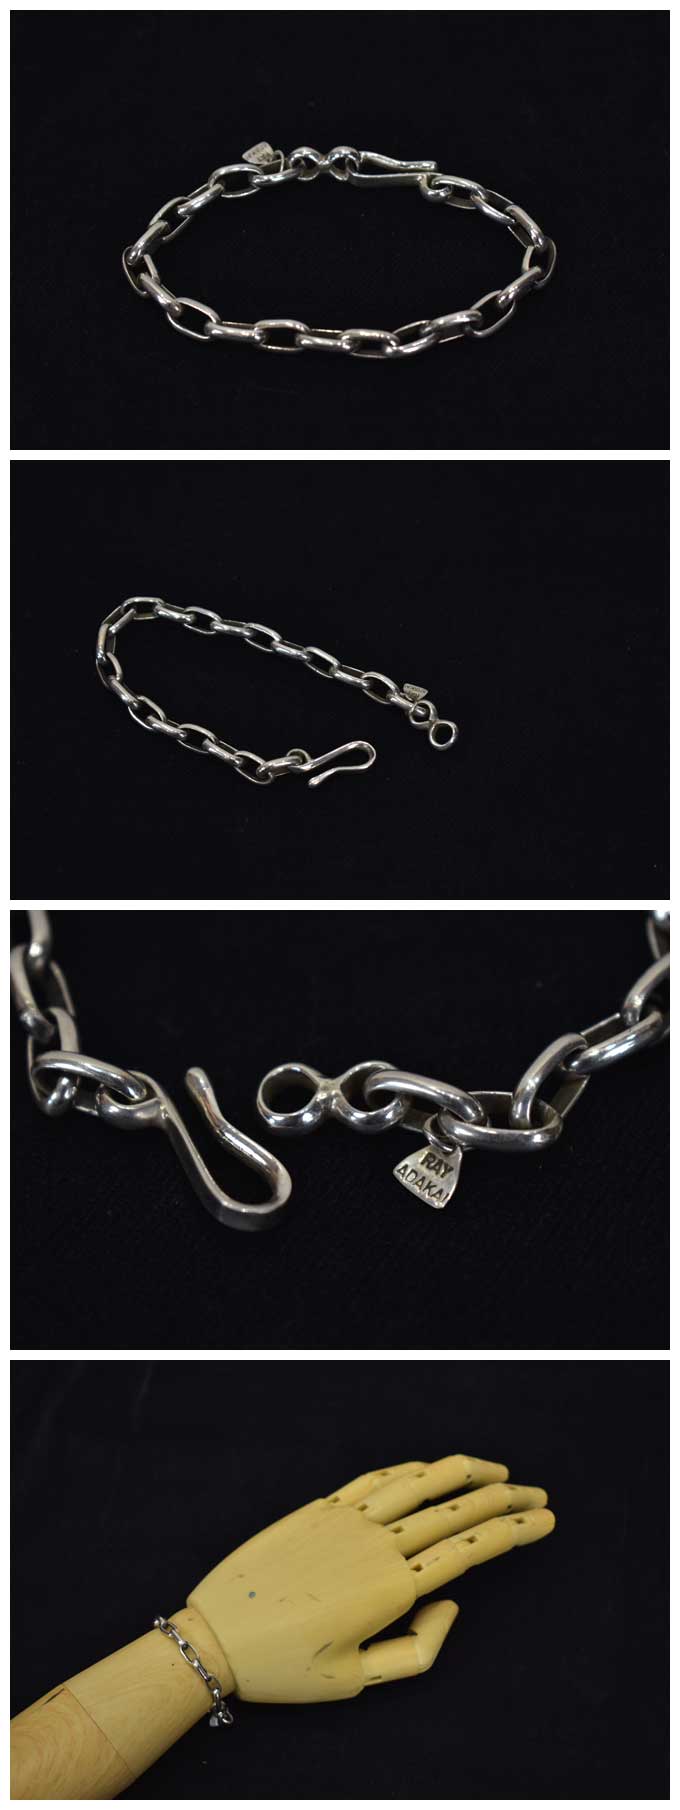 RAY ADAKAI Hand Made Chain